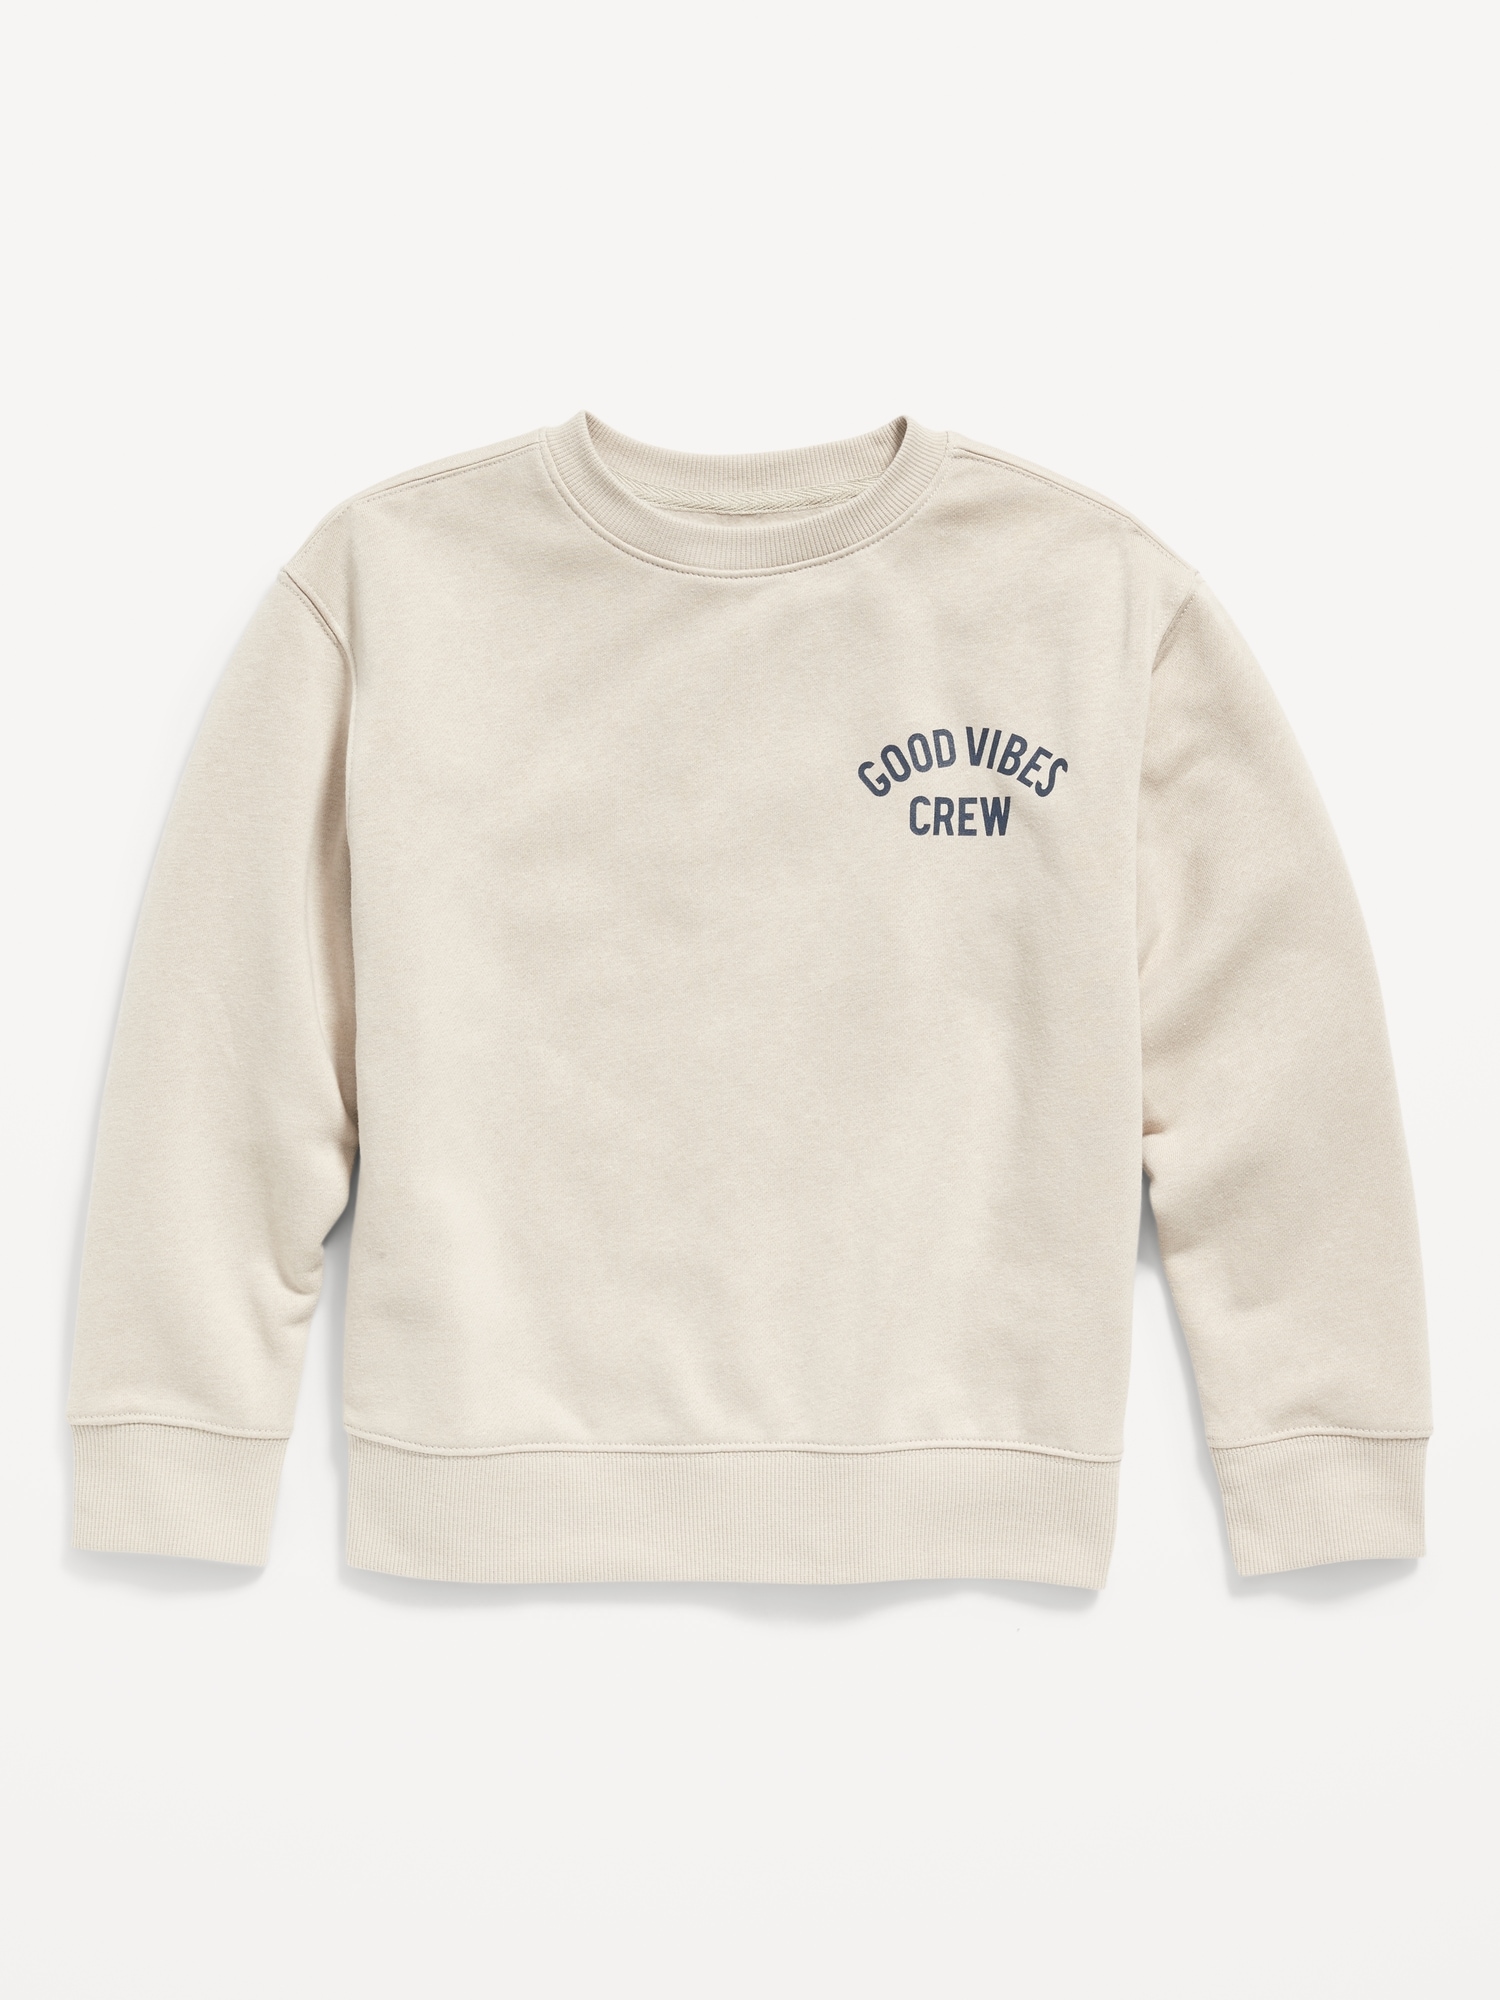 Graphic Gender-Neutral Crew-Neck Sweatshirt for Kids | Old Navy